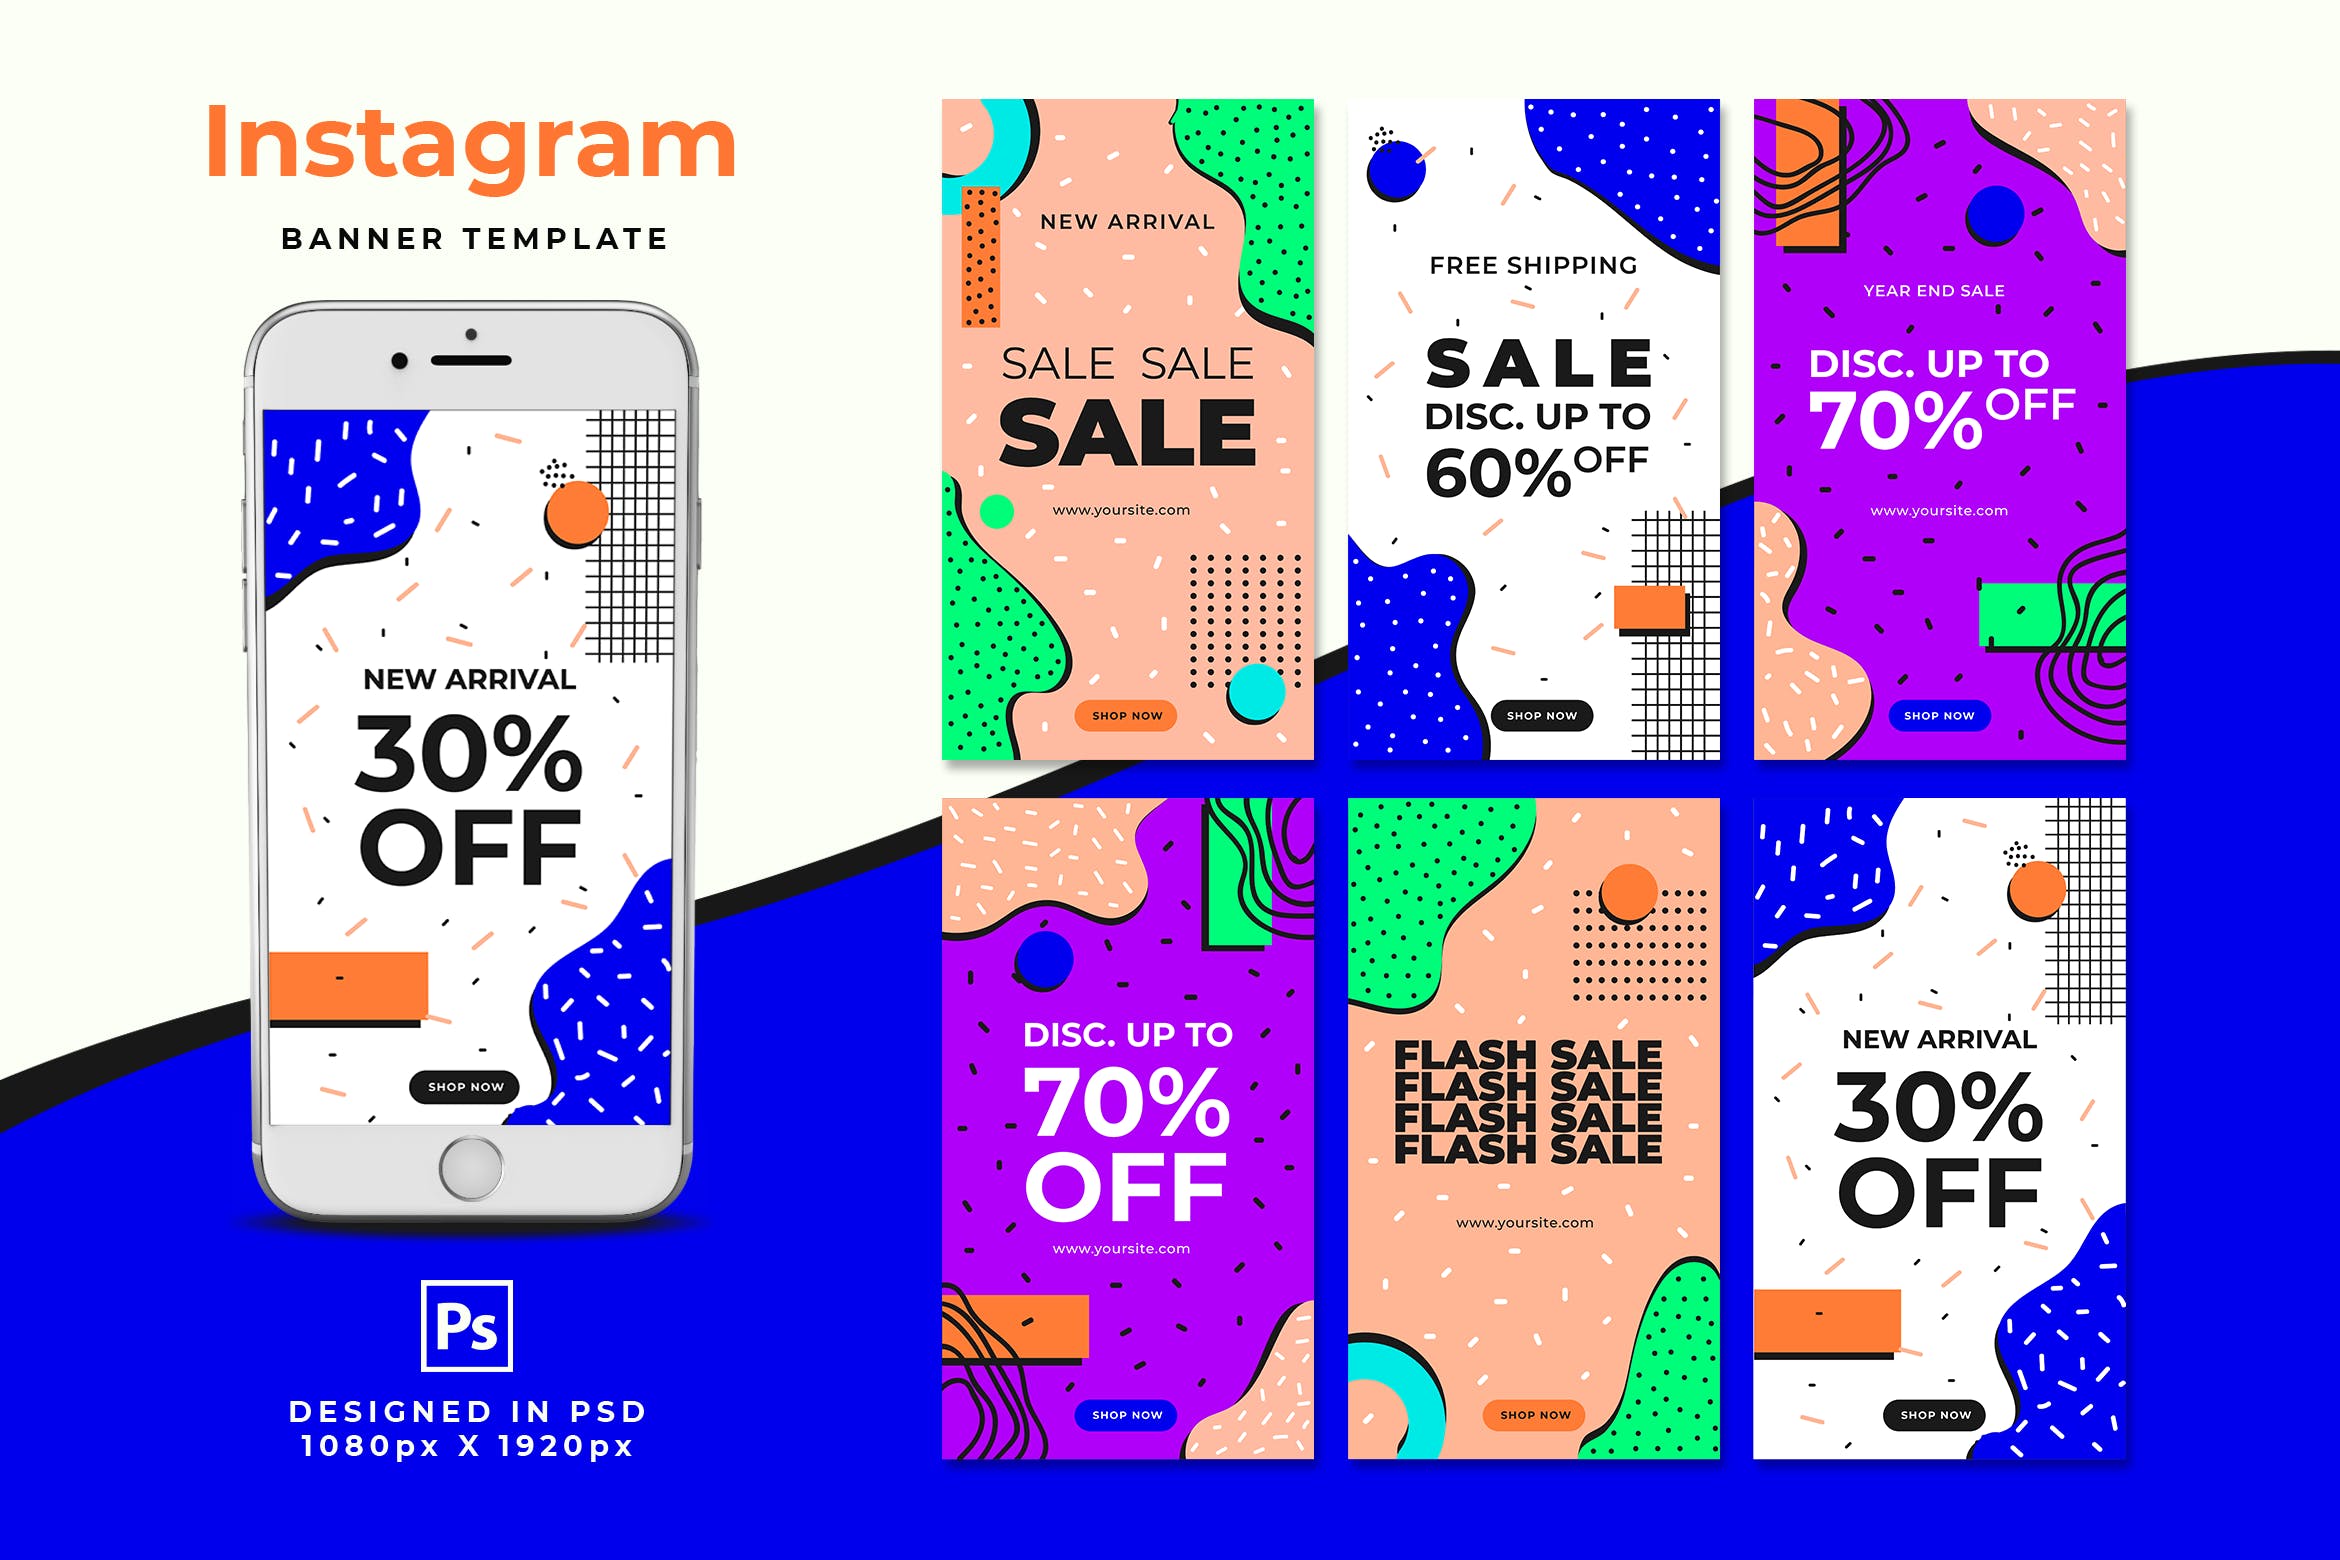 时尚促销卡通漫画风格Instagram故事贴图模板素材 Sale Instagram Stories设计素材模板